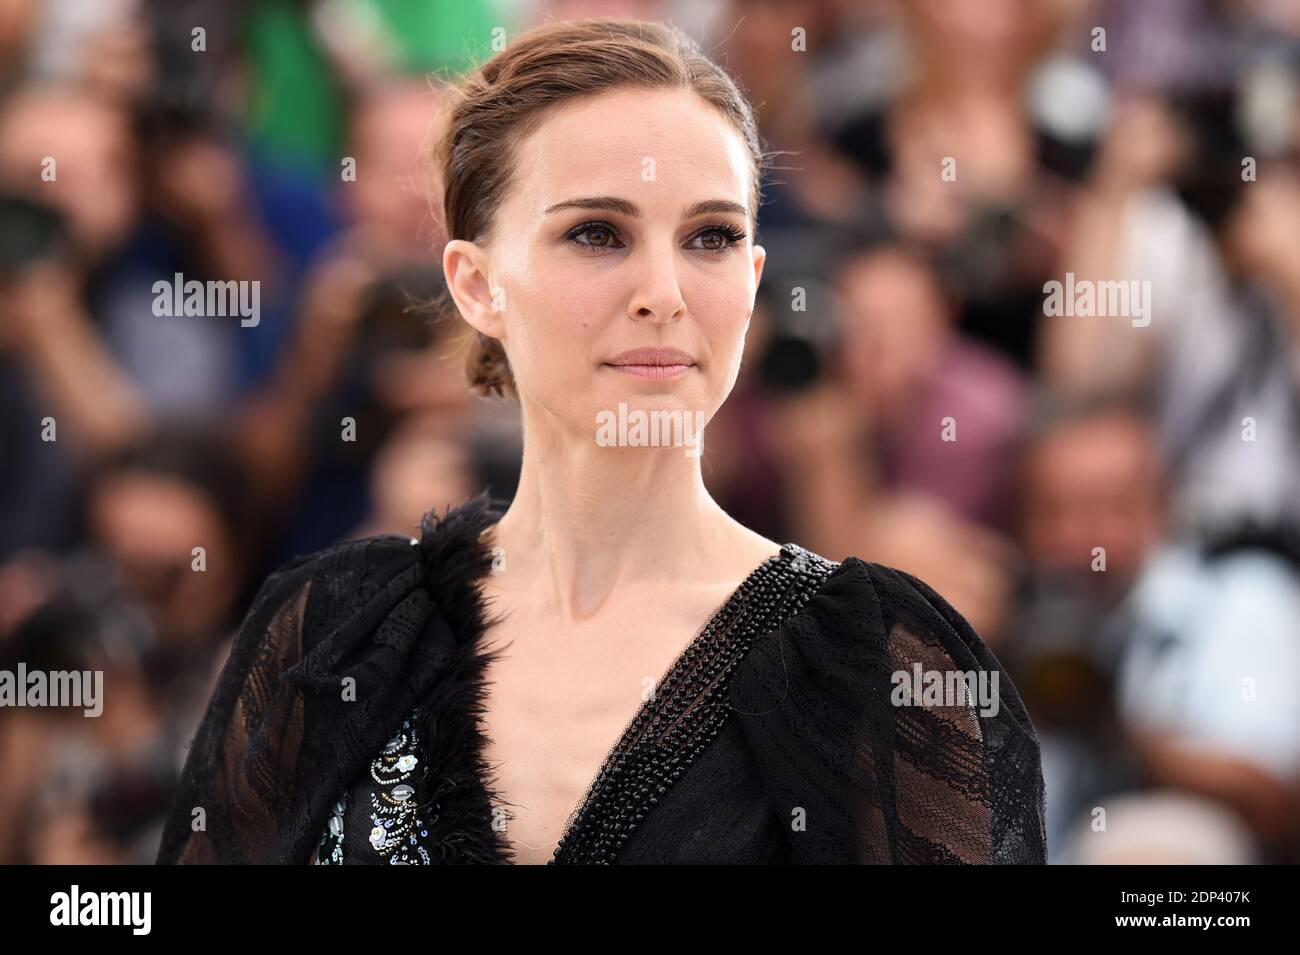 Natalie Portman partecipa alla fotocellula 'A tale of Love and Darkness' al 68° Festival di Cannes il 17 maggio 2015 a Cannes, Francia. Foto di Lionel Hahn/ABACAPRESS.COM Foto Stock